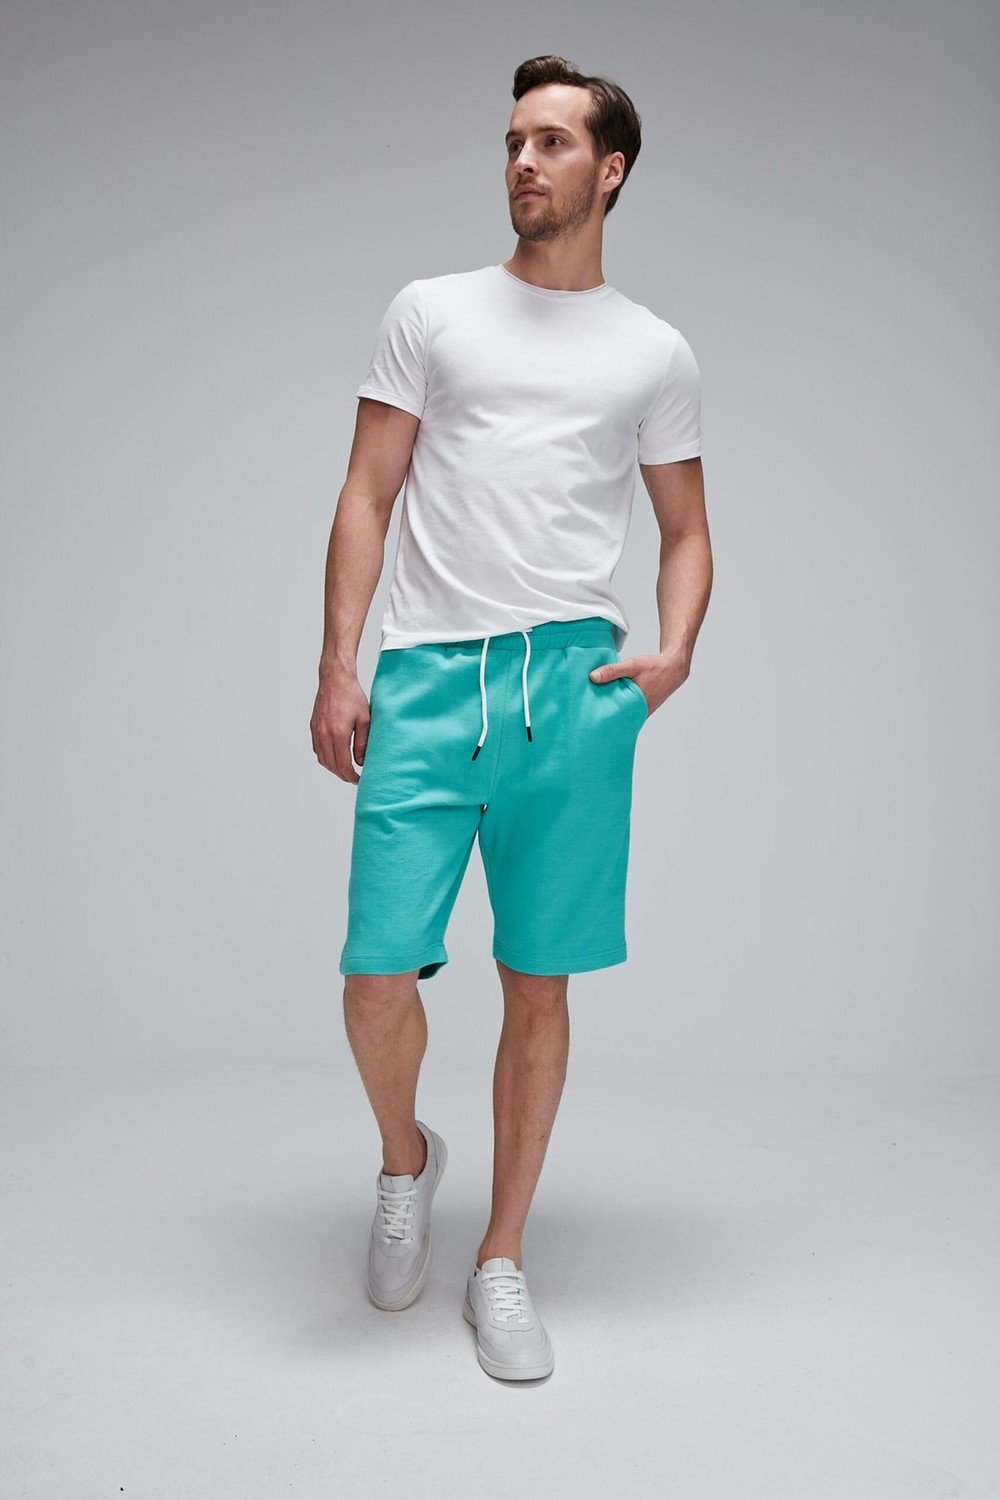 GRIMELANGE Shorts - Green - Normal Waist